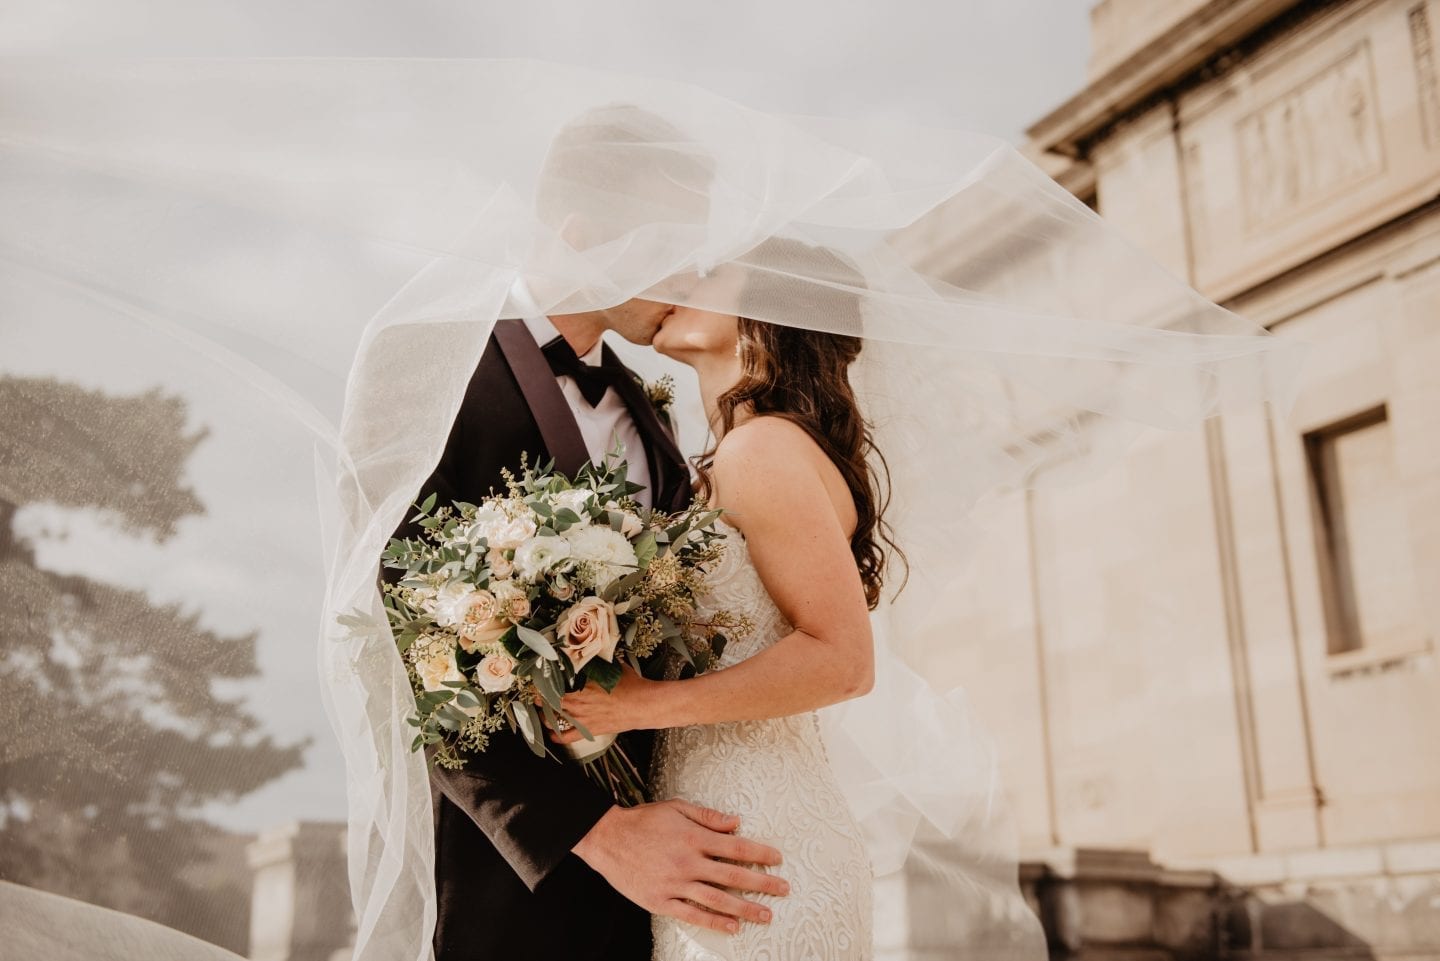 Winter Weddings 2019: Flowers And Pearls